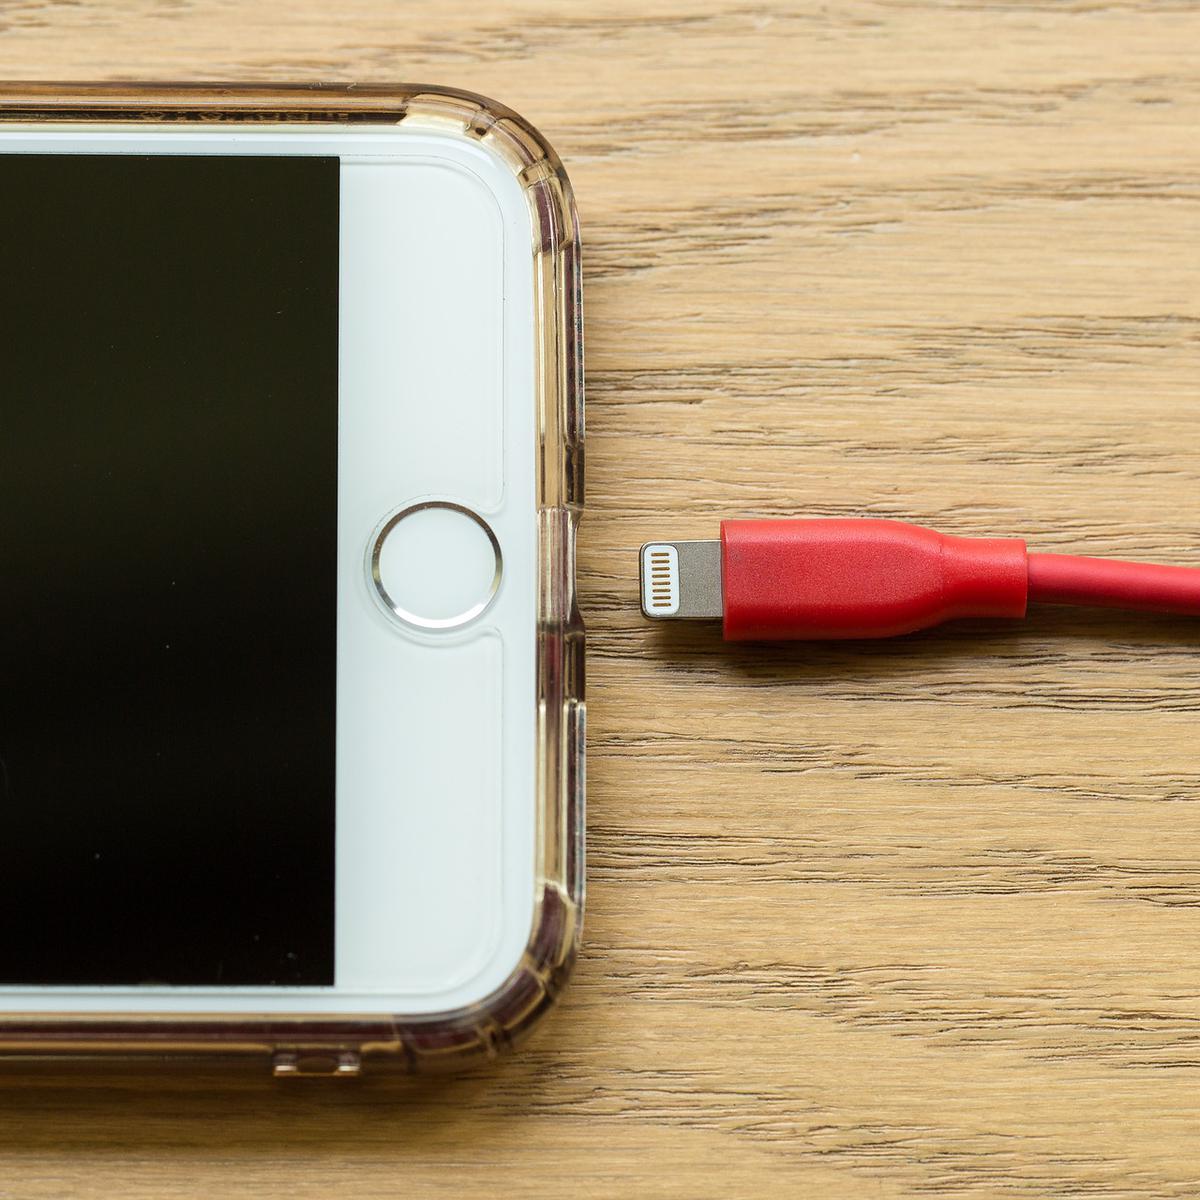 Acerca de la recarga optimizada de la batería del iPhone - Soporte técnico  de Apple (US)